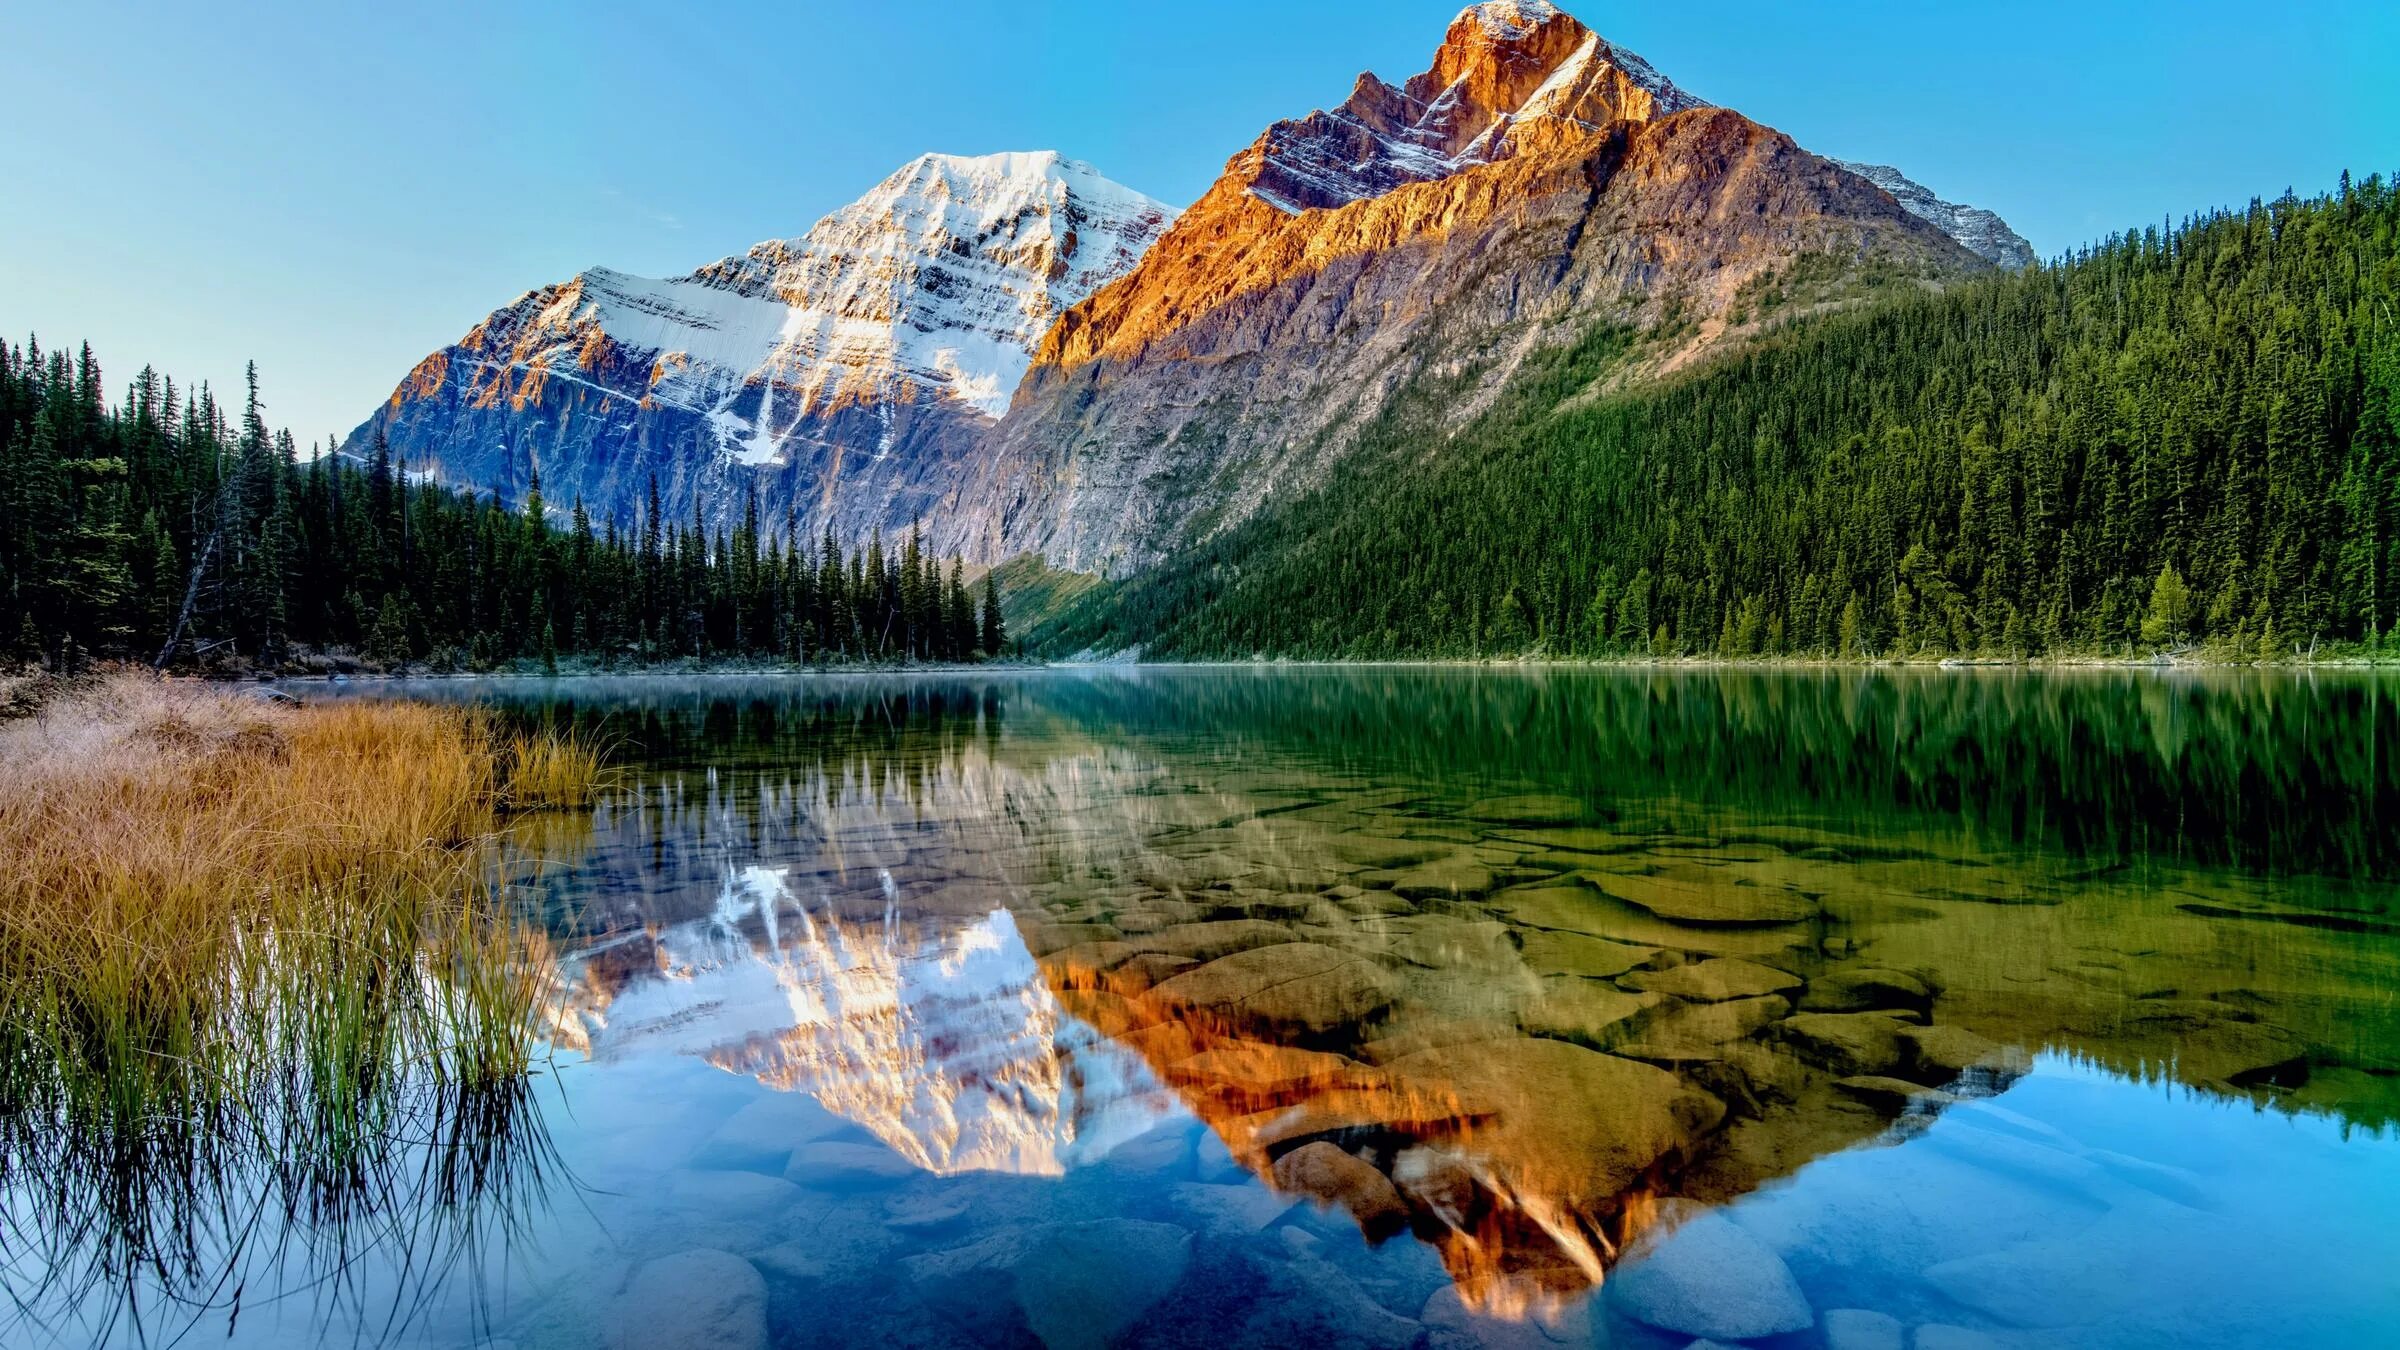 Гора Эдит кавелл Канада. Канада озеро в лесу. Горы с фильтром. David Pirrie — MT Edith Cavell, Canadian Rockies 2023. Mt content